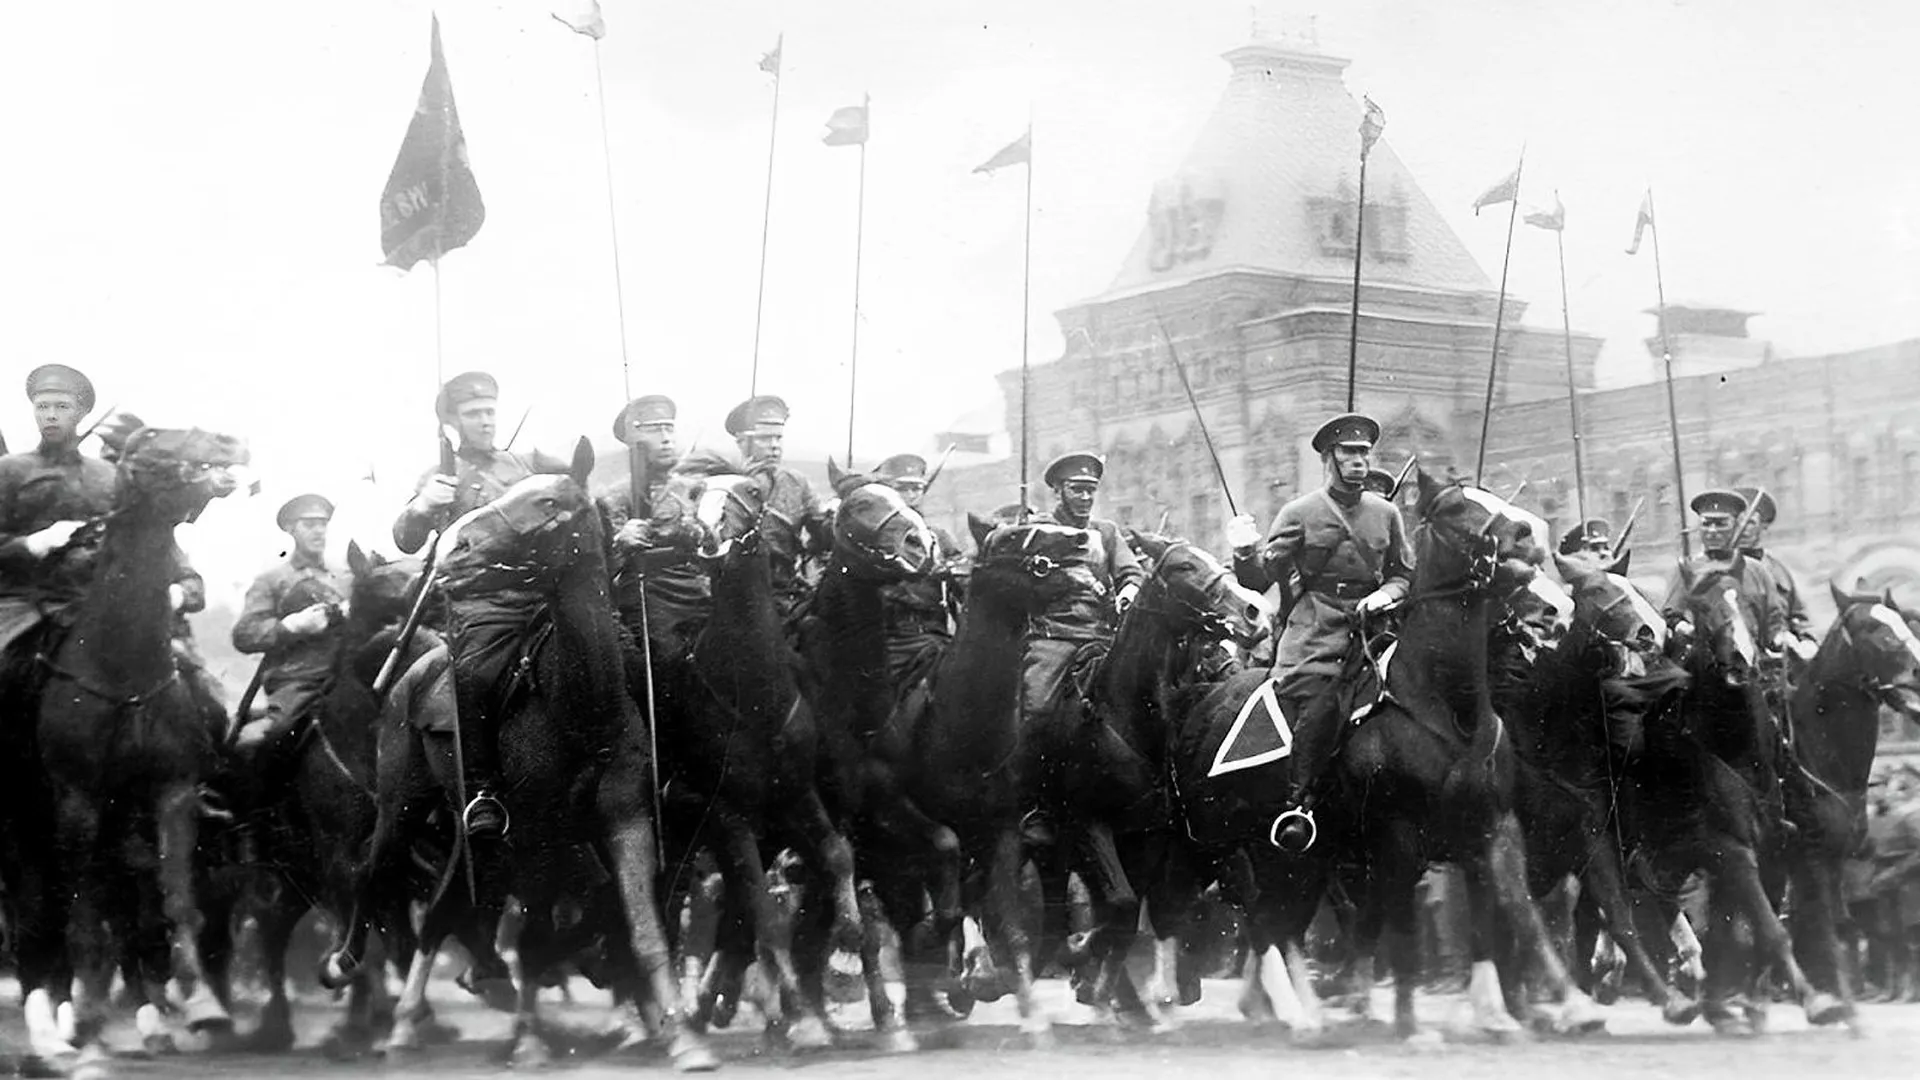 Кавалеристы Красной армии на параде в Москве. Фото: Scherl